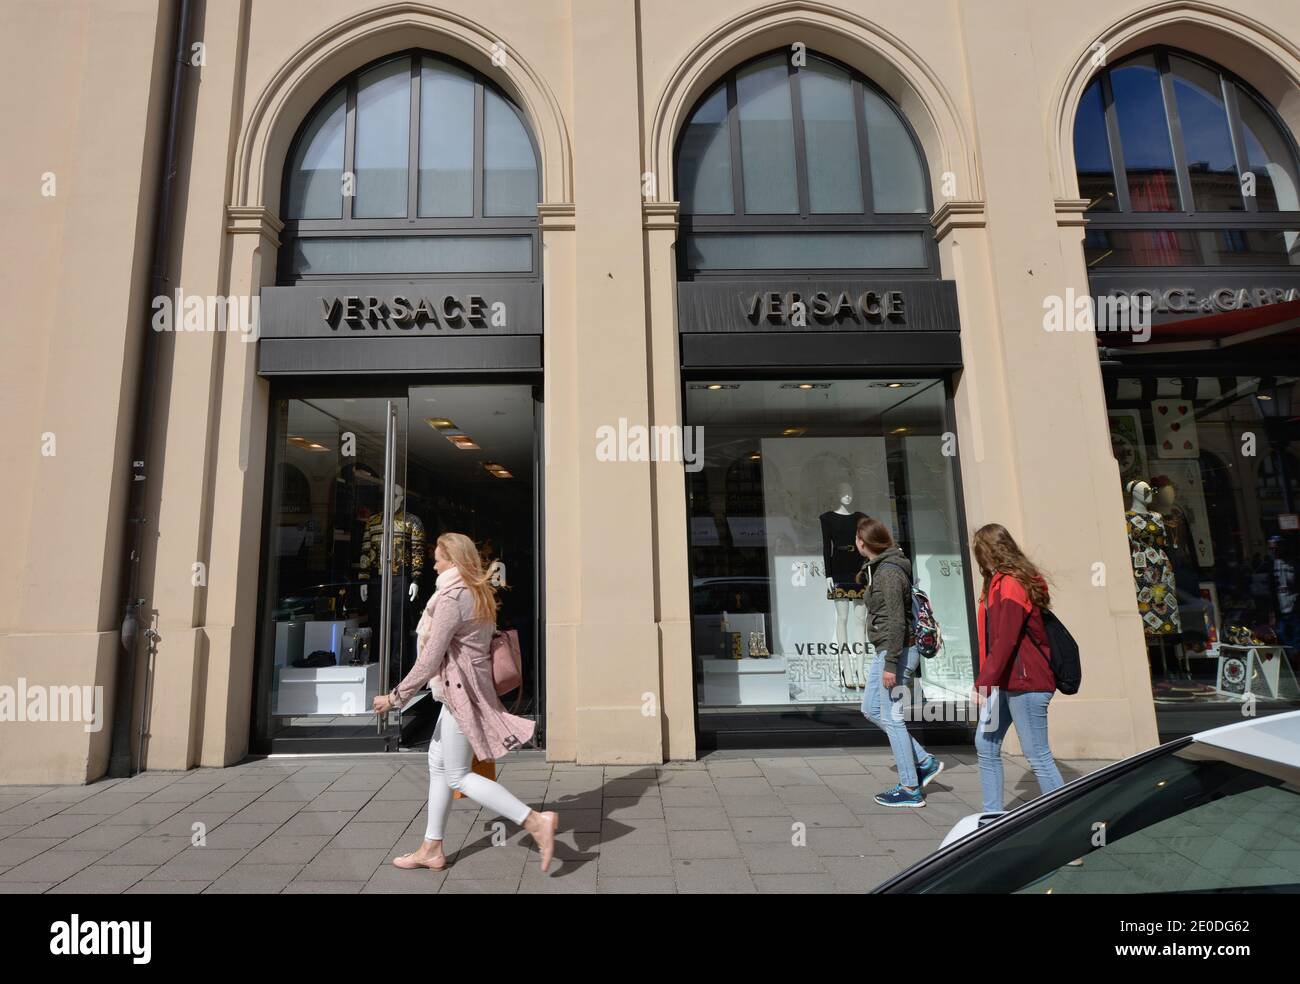 Versace, Maximilianstrasse, München, Bayern, Deutschland Stockfotografie -  Alamy